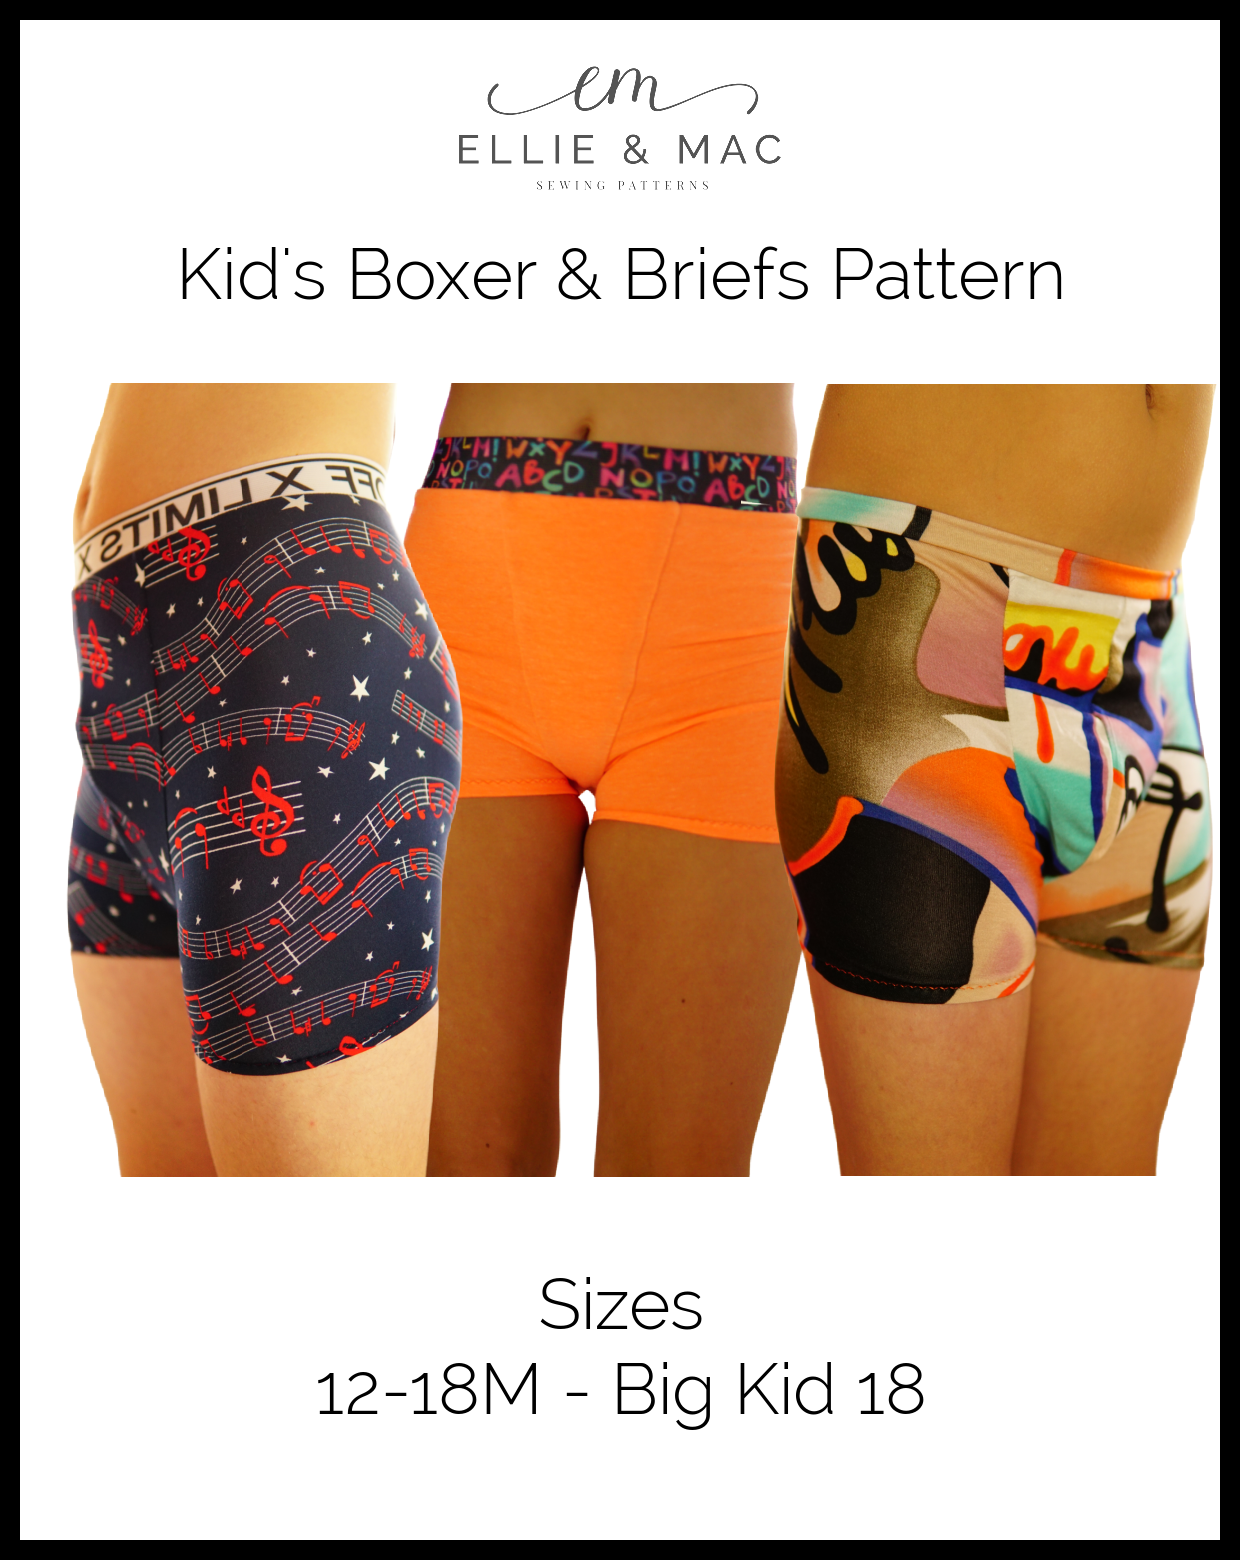 Kids Boxerwear Underwear Pattern